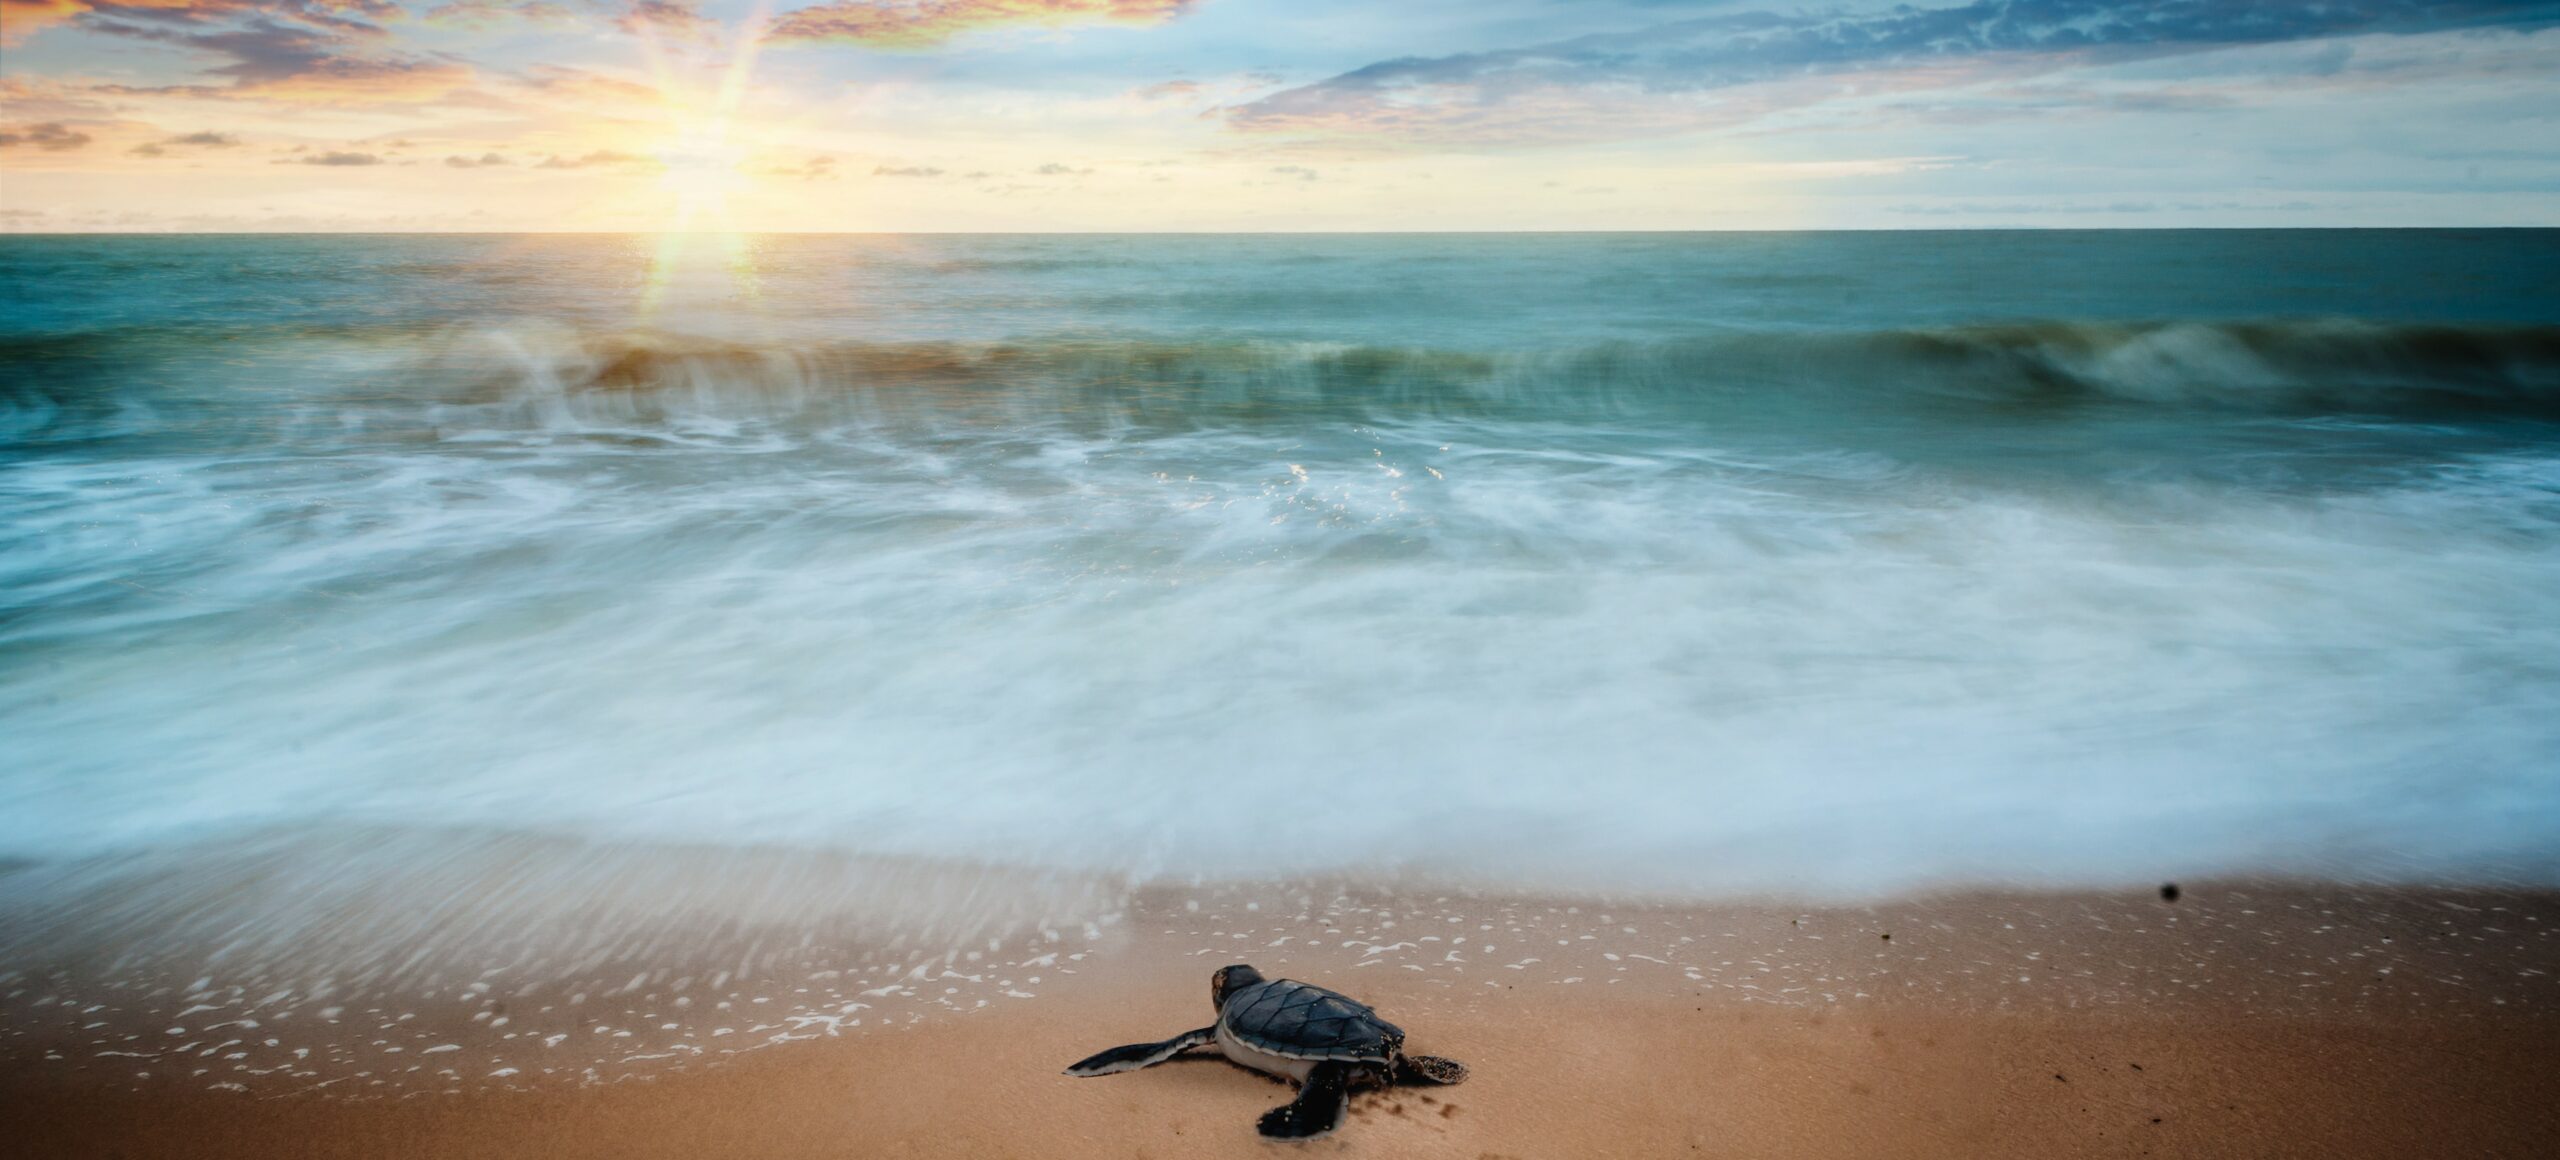 Eine Schildkröte am Meer